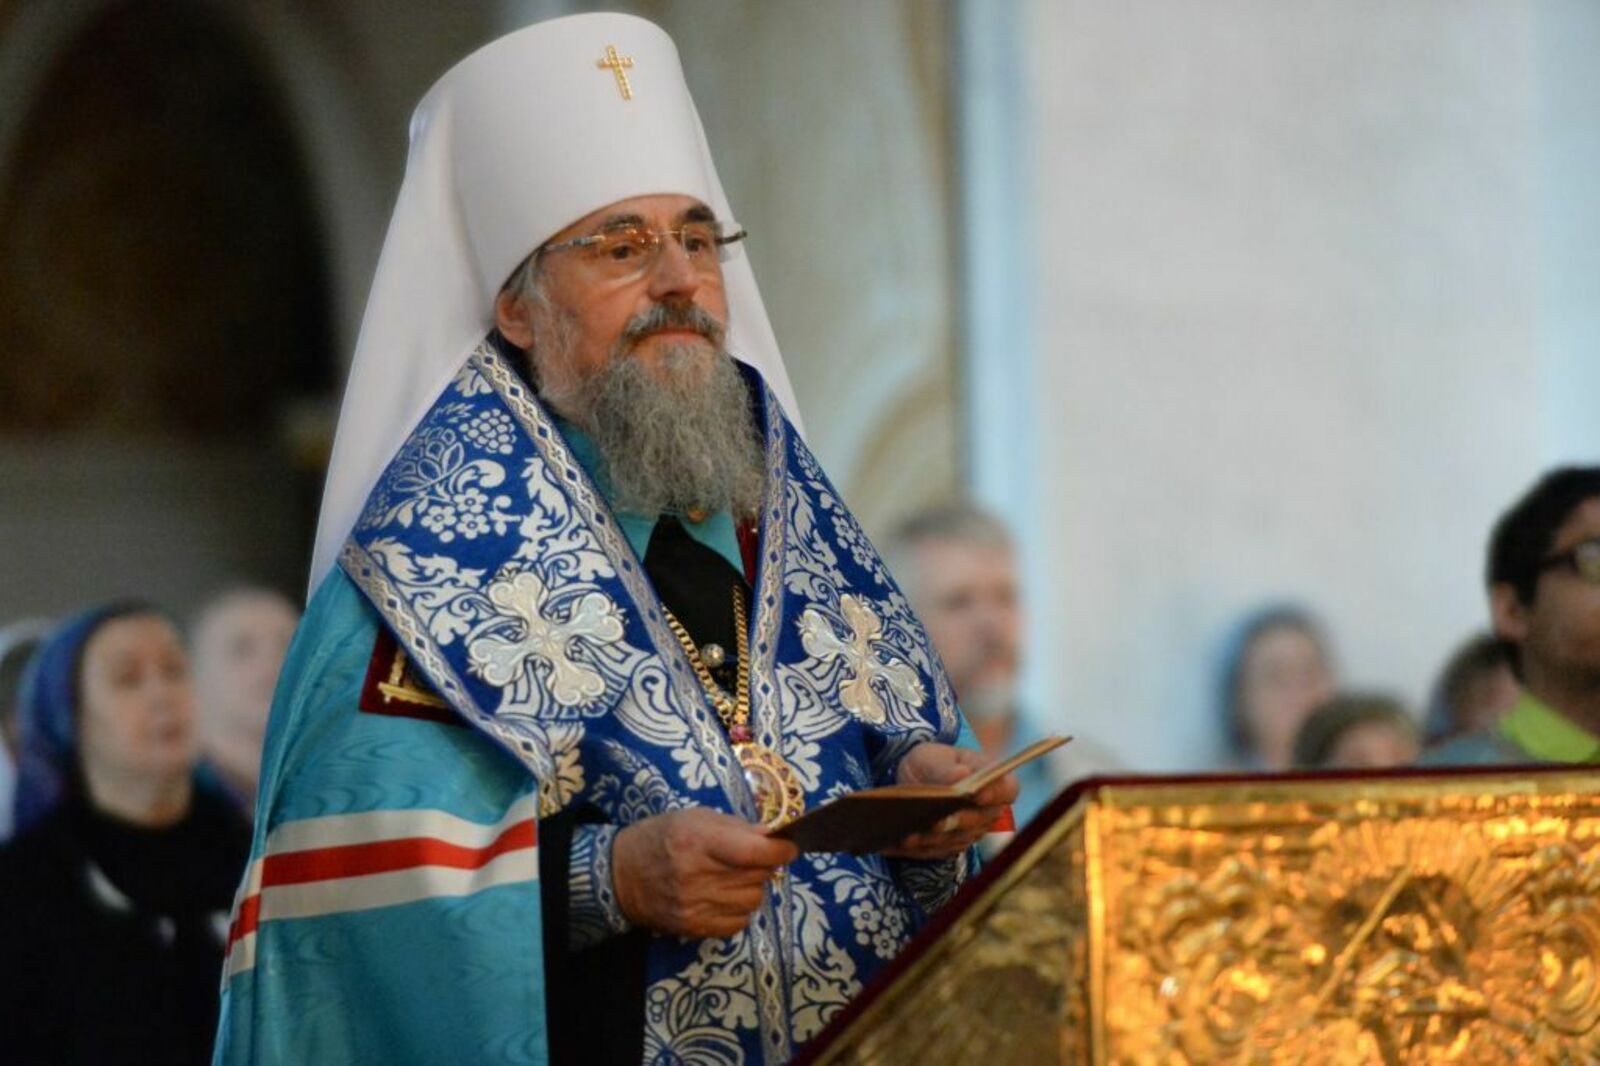 В канун Рождества Христова митрополит Никон адресовал свои самые добрые пожелания жителям Башкирии